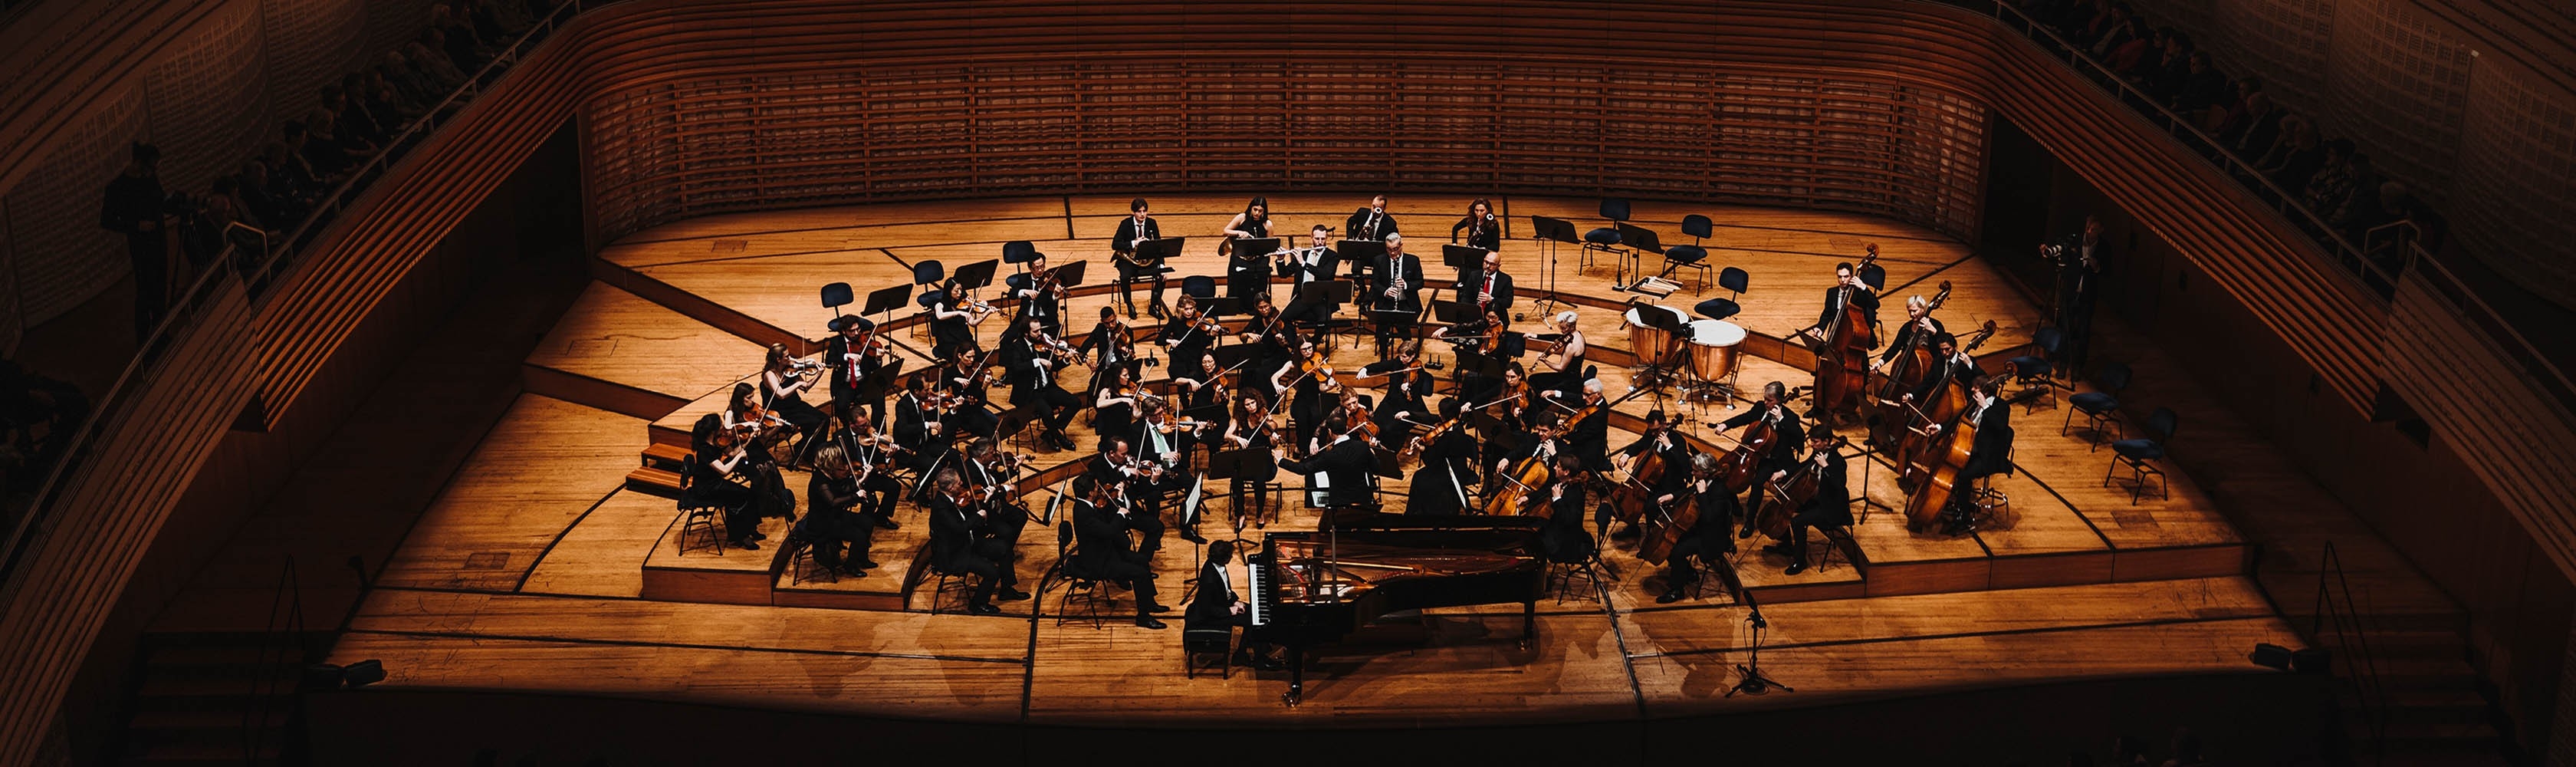 Human Rights Orchestra – Musik für Menschenrechte